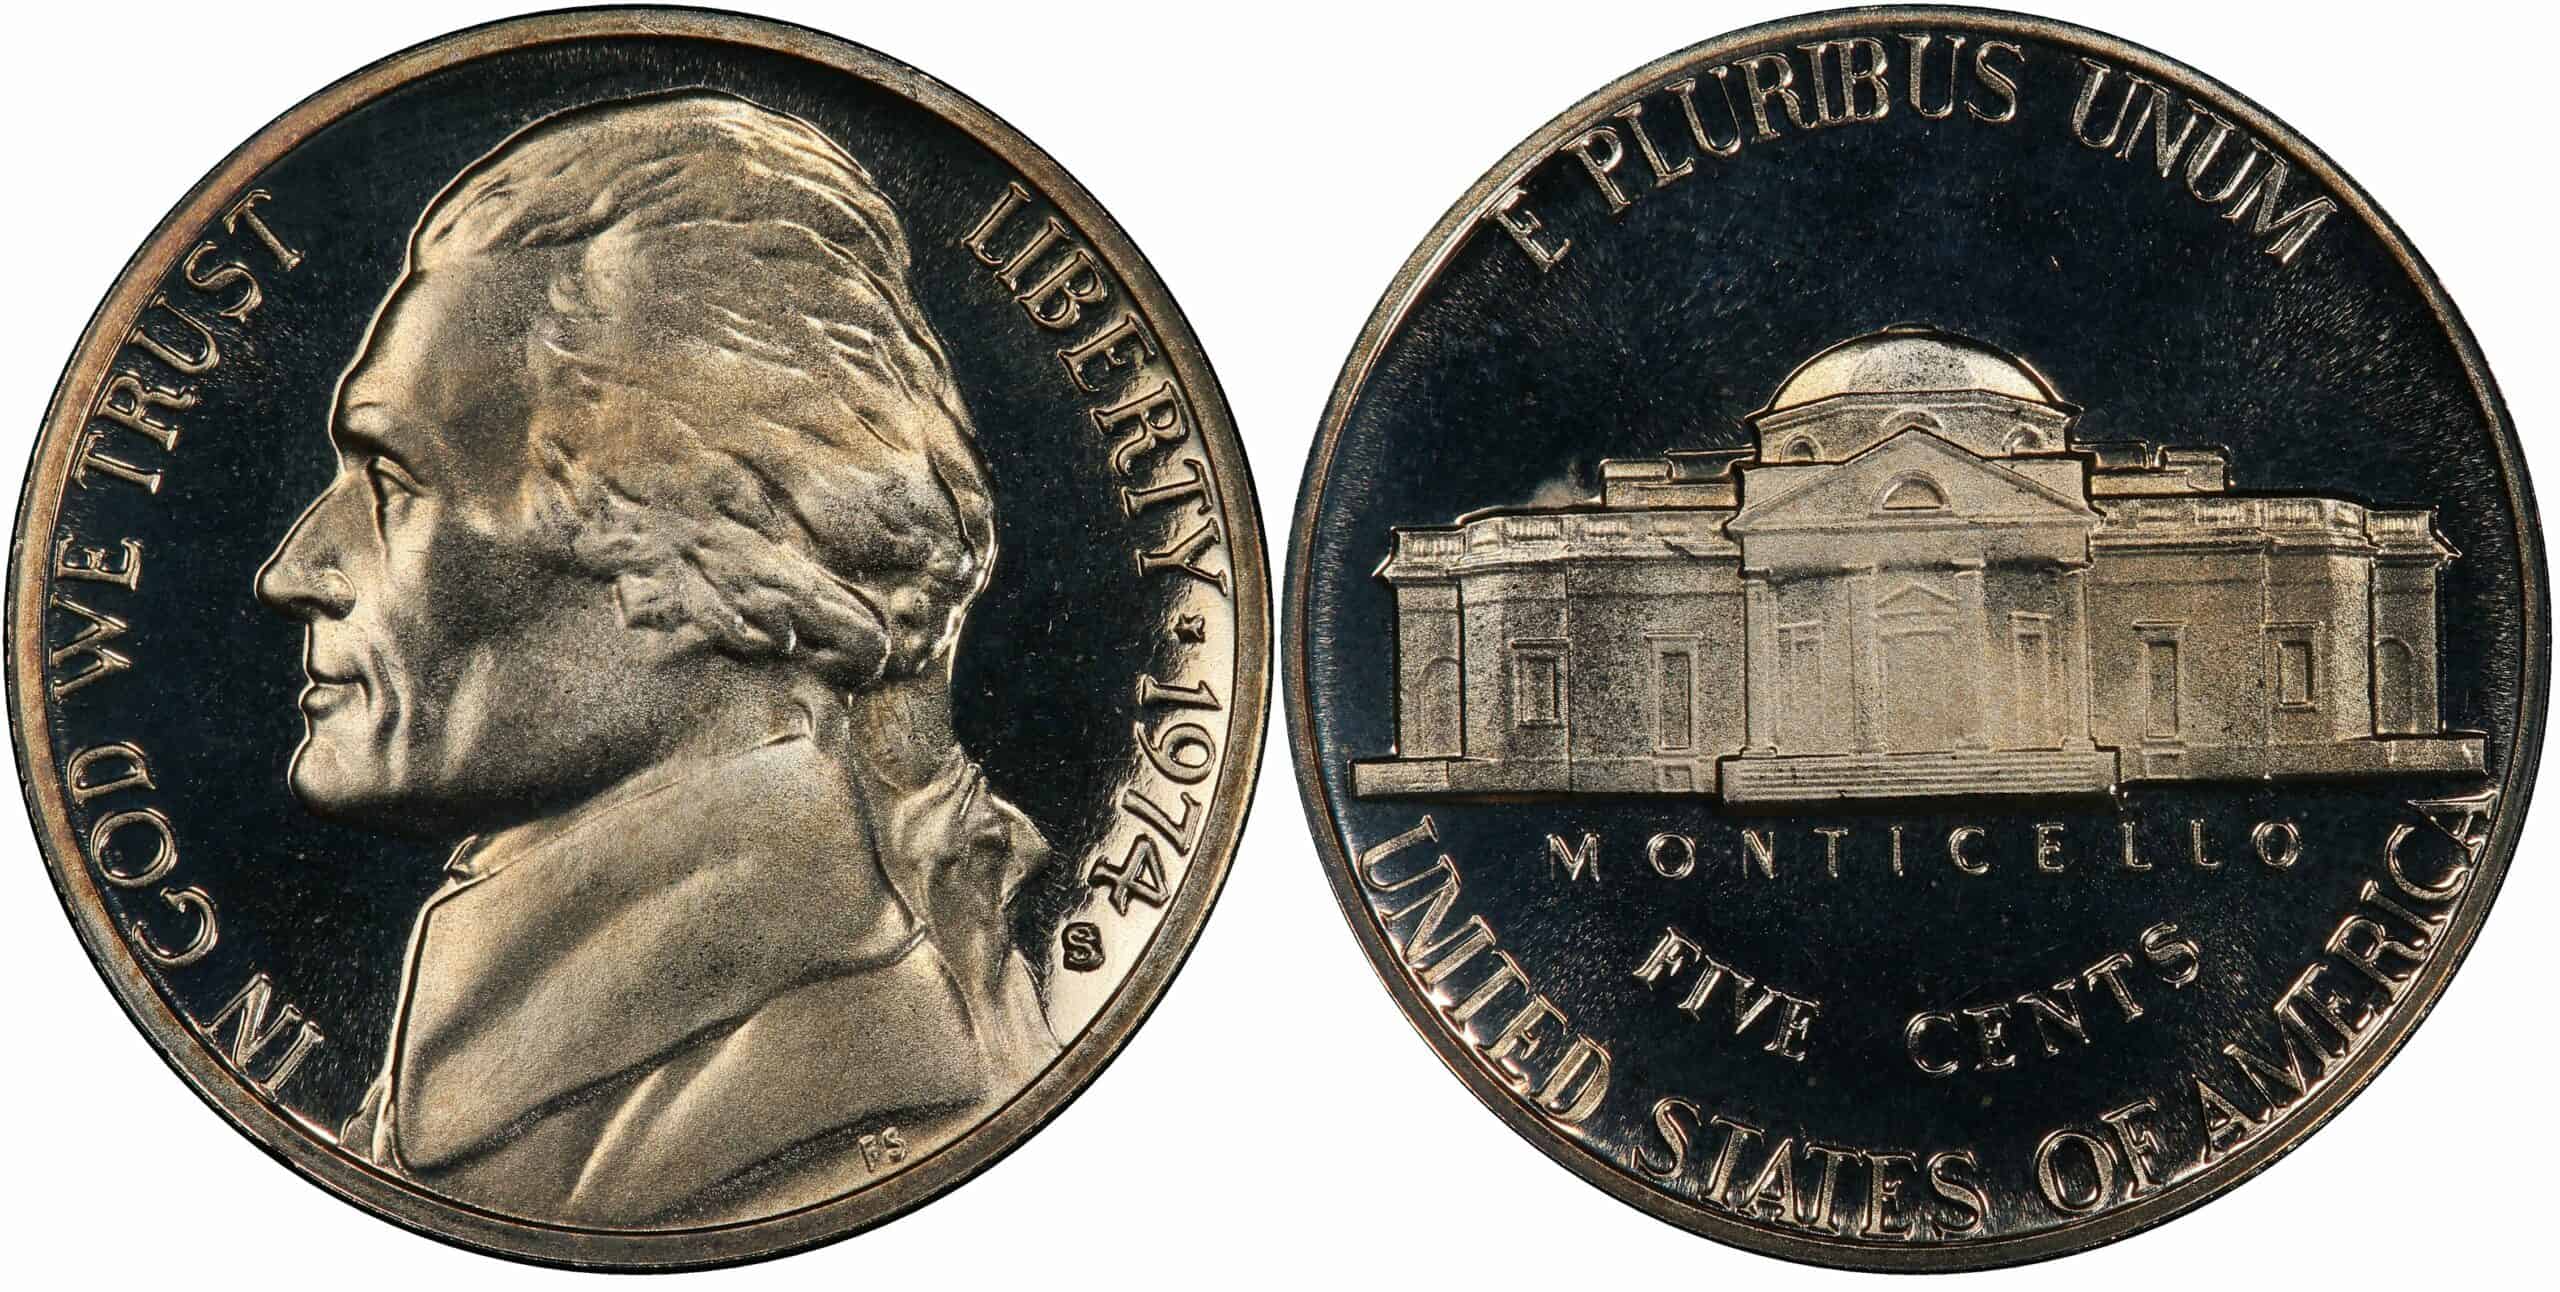 1974 S Nickel Value